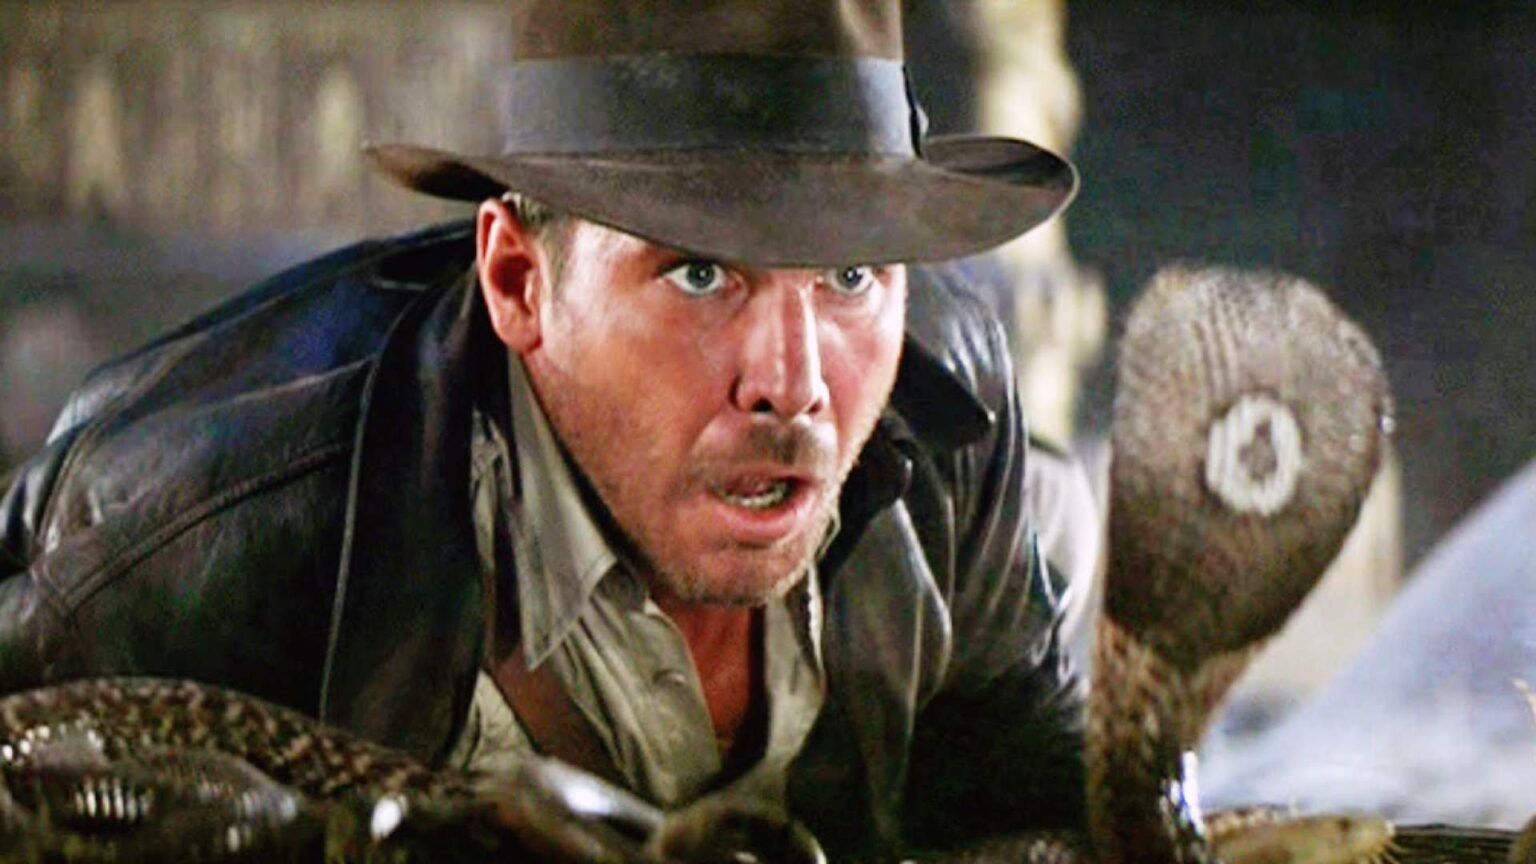 El aventurero favorito de todos los tiempos está de regreso. Entérate de todo acerca del nuevo videojuego de 'Indiana Jones'.